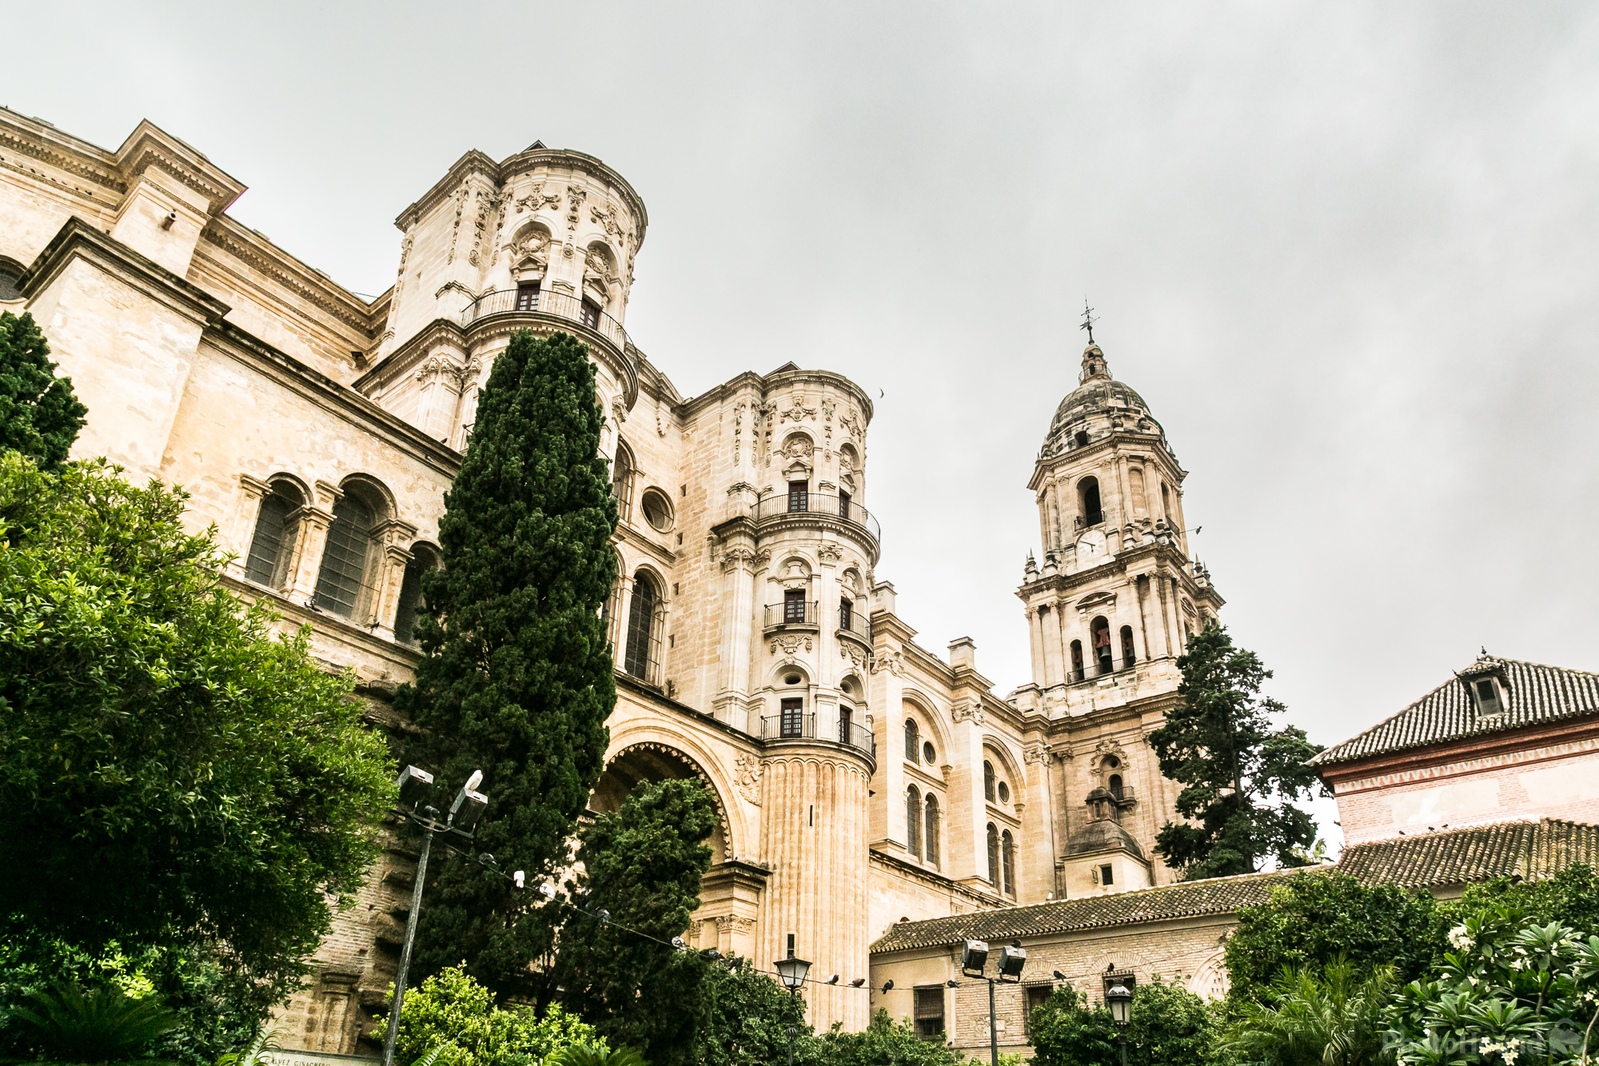 Image of Catedral de Nuestra Señora de la Encarnación by Carol Henson